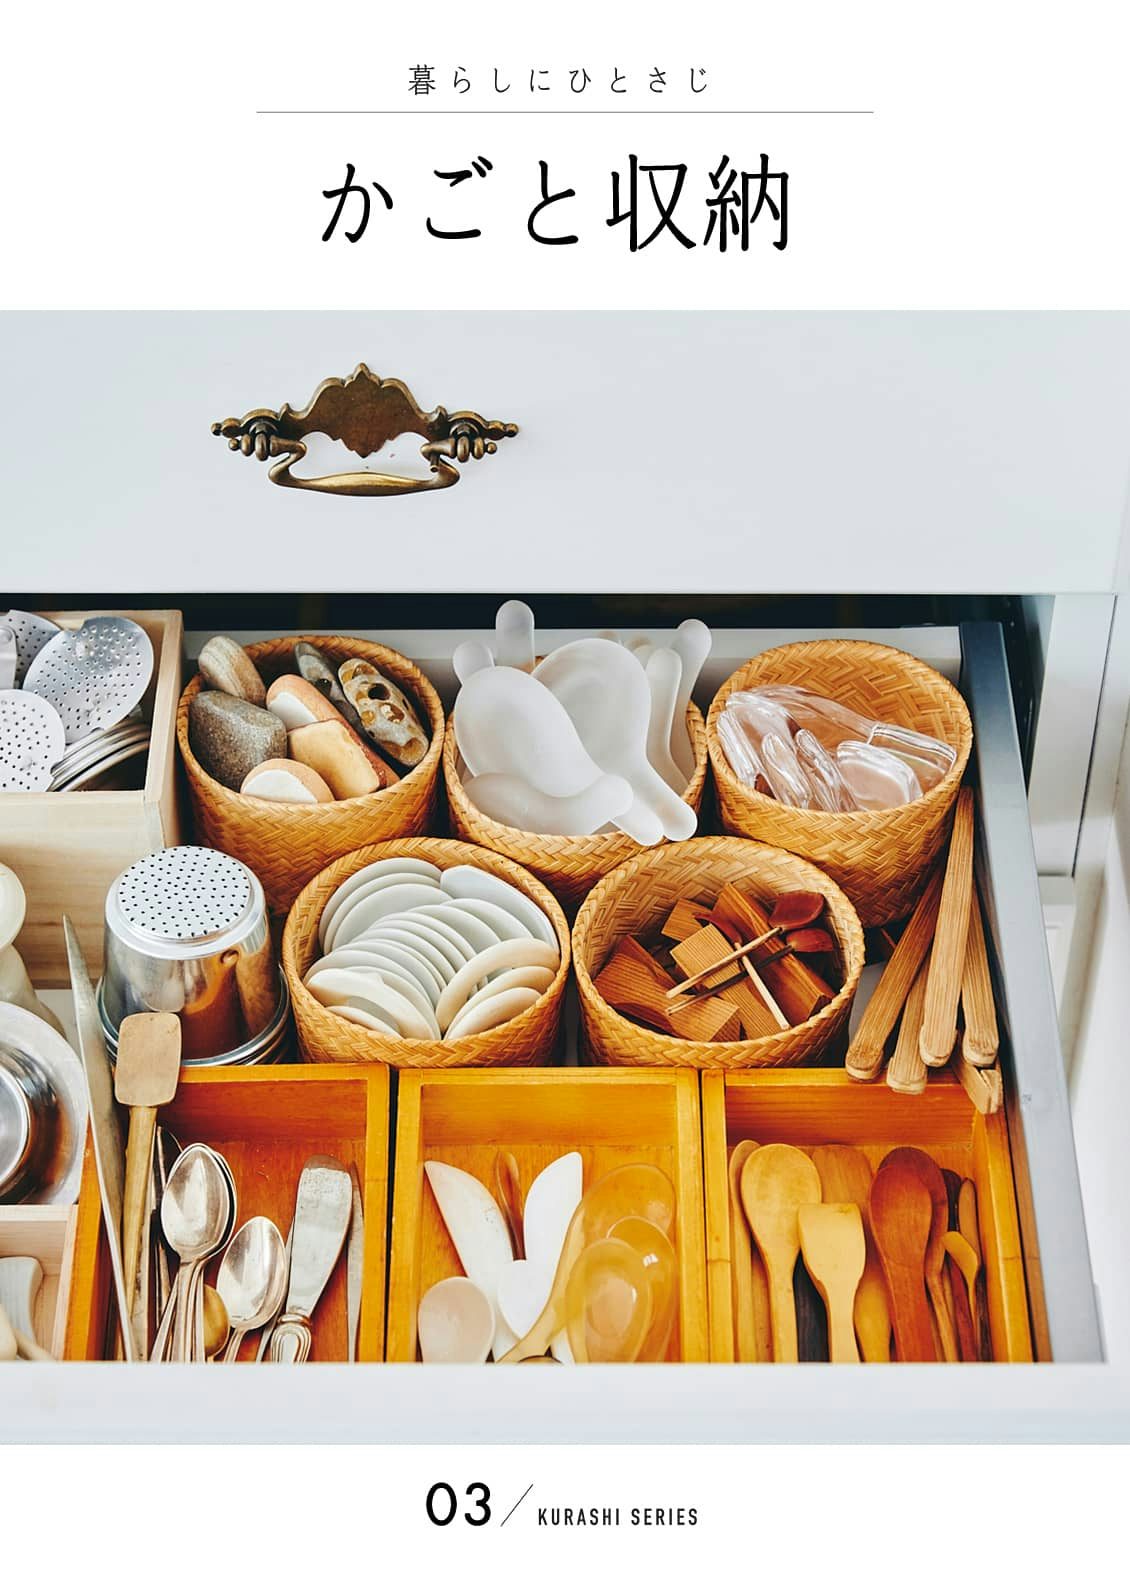 食器はかご収納が便利 キッチンの収納で活躍するかごをご紹介 北欧 暮らしの道具店